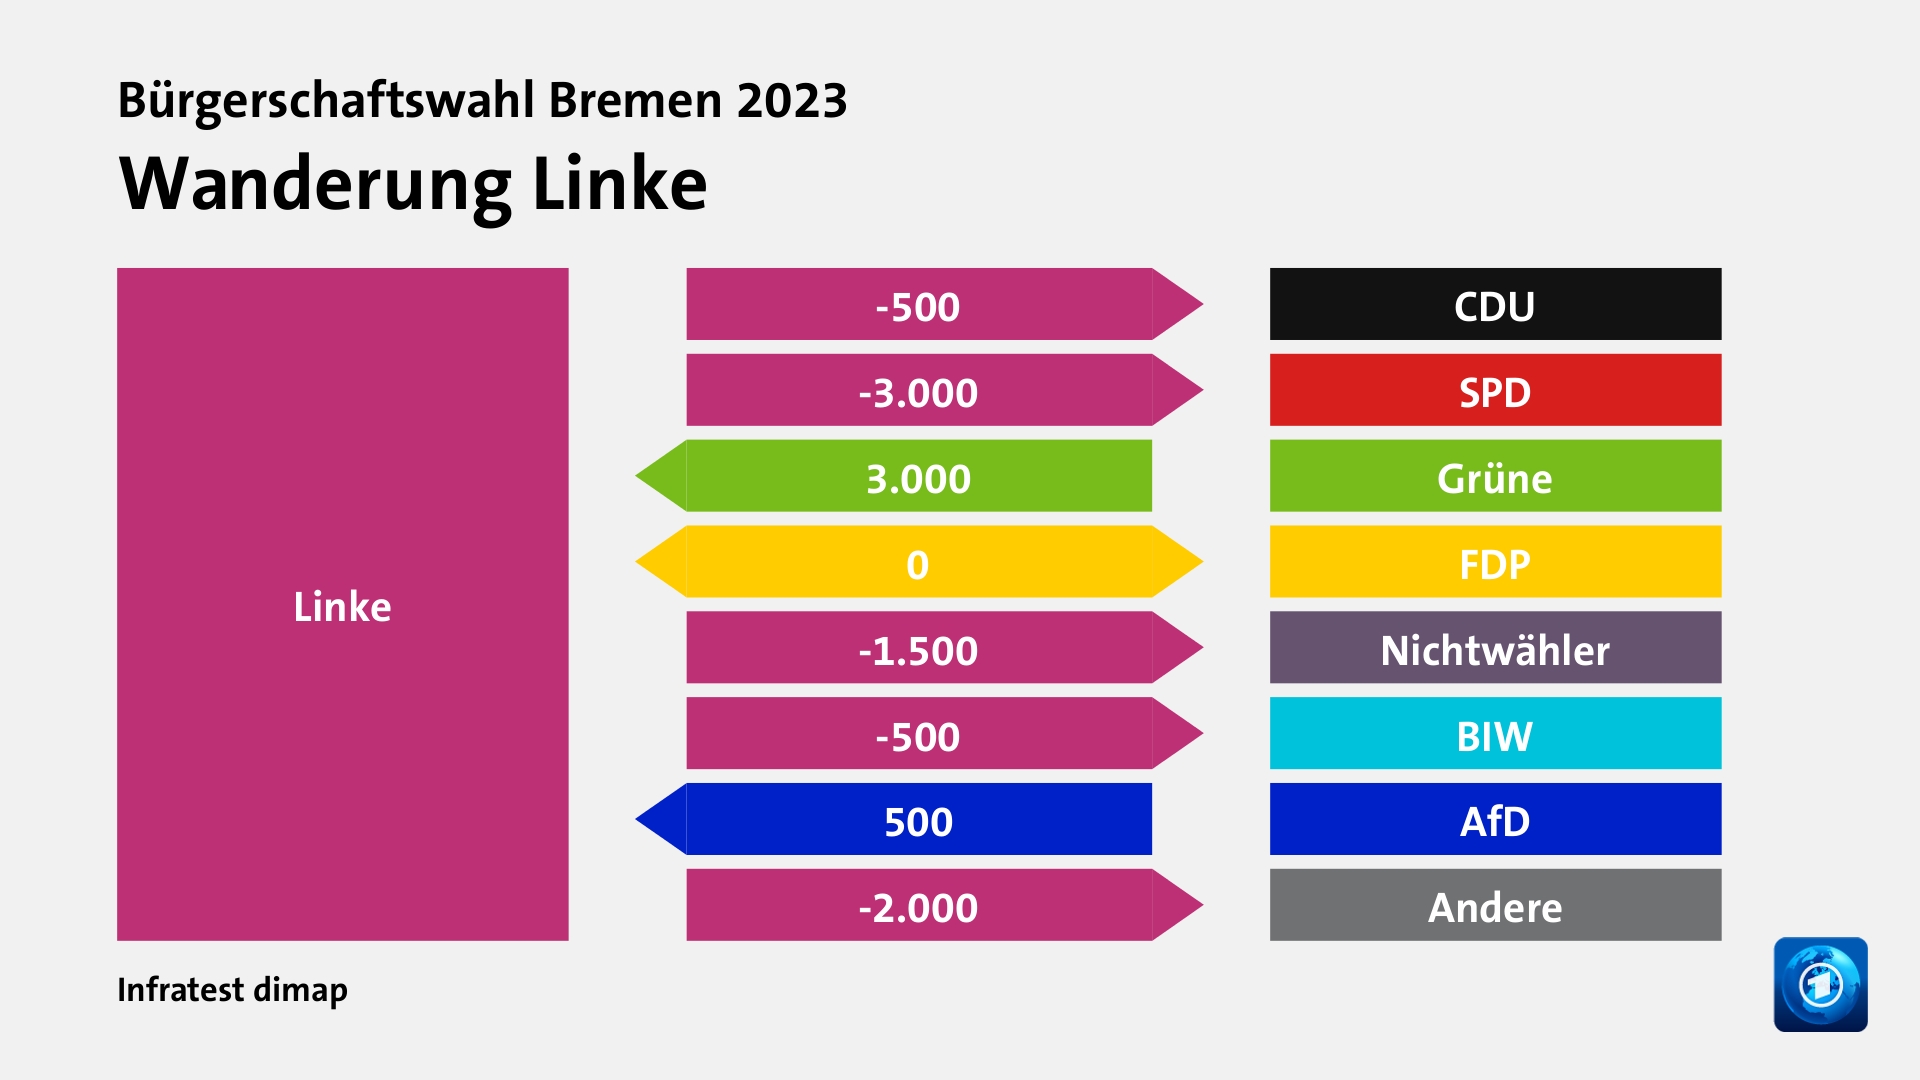 Wanderung Linkezu CDU 500 Wähler, zu SPD 3.000 Wähler, von Grüne 3.000 Wähler, zu FDP 0 Wähler, zu Nichtwähler 1.500 Wähler, zu BIW 500 Wähler, von AfD 500 Wähler, zu Andere 2.000 Wähler, Quelle: Infratest dimap